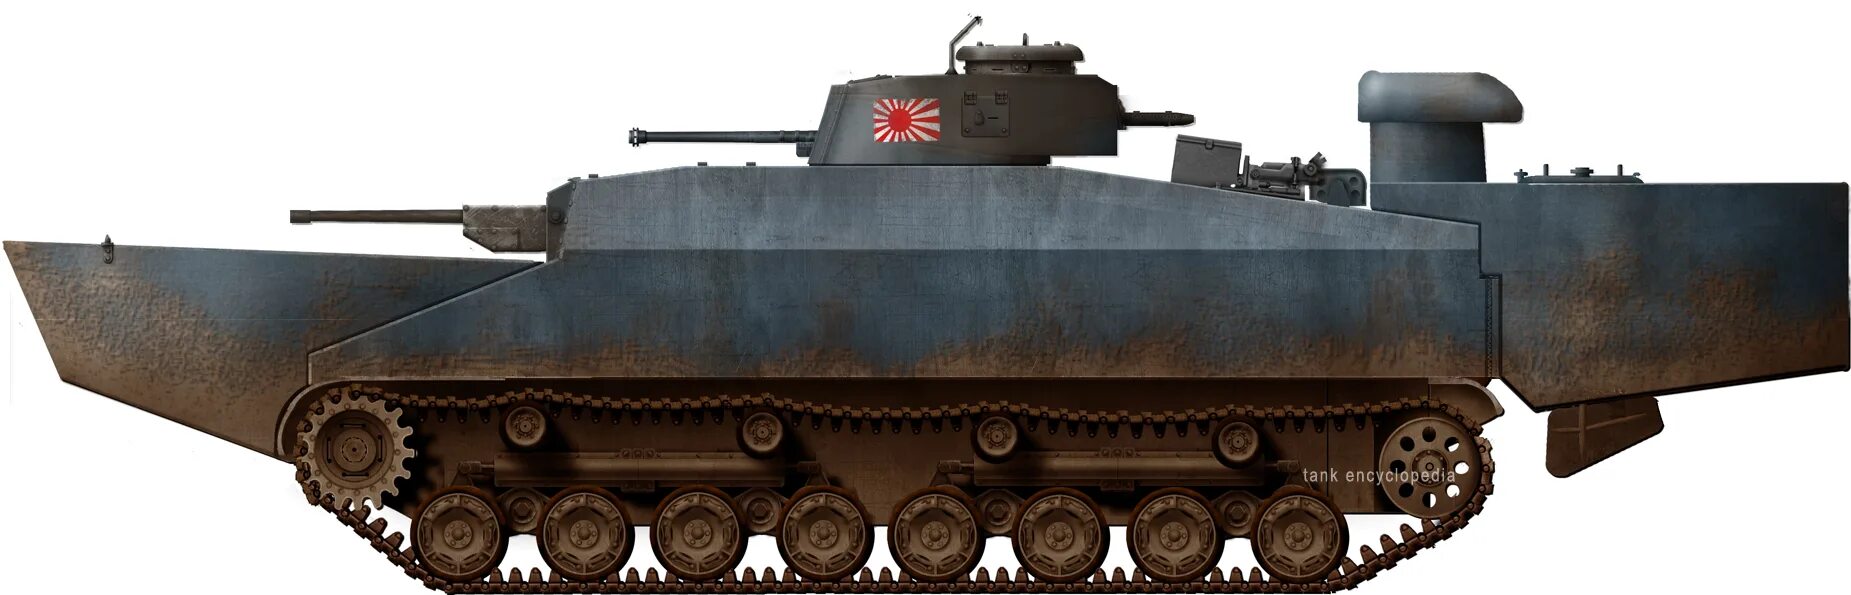 Хори 3 танк. Type 5 to-ku. Танк Type 3 ka-chi. Тип 5, «то-ку». Японский танк Mitsu 108.